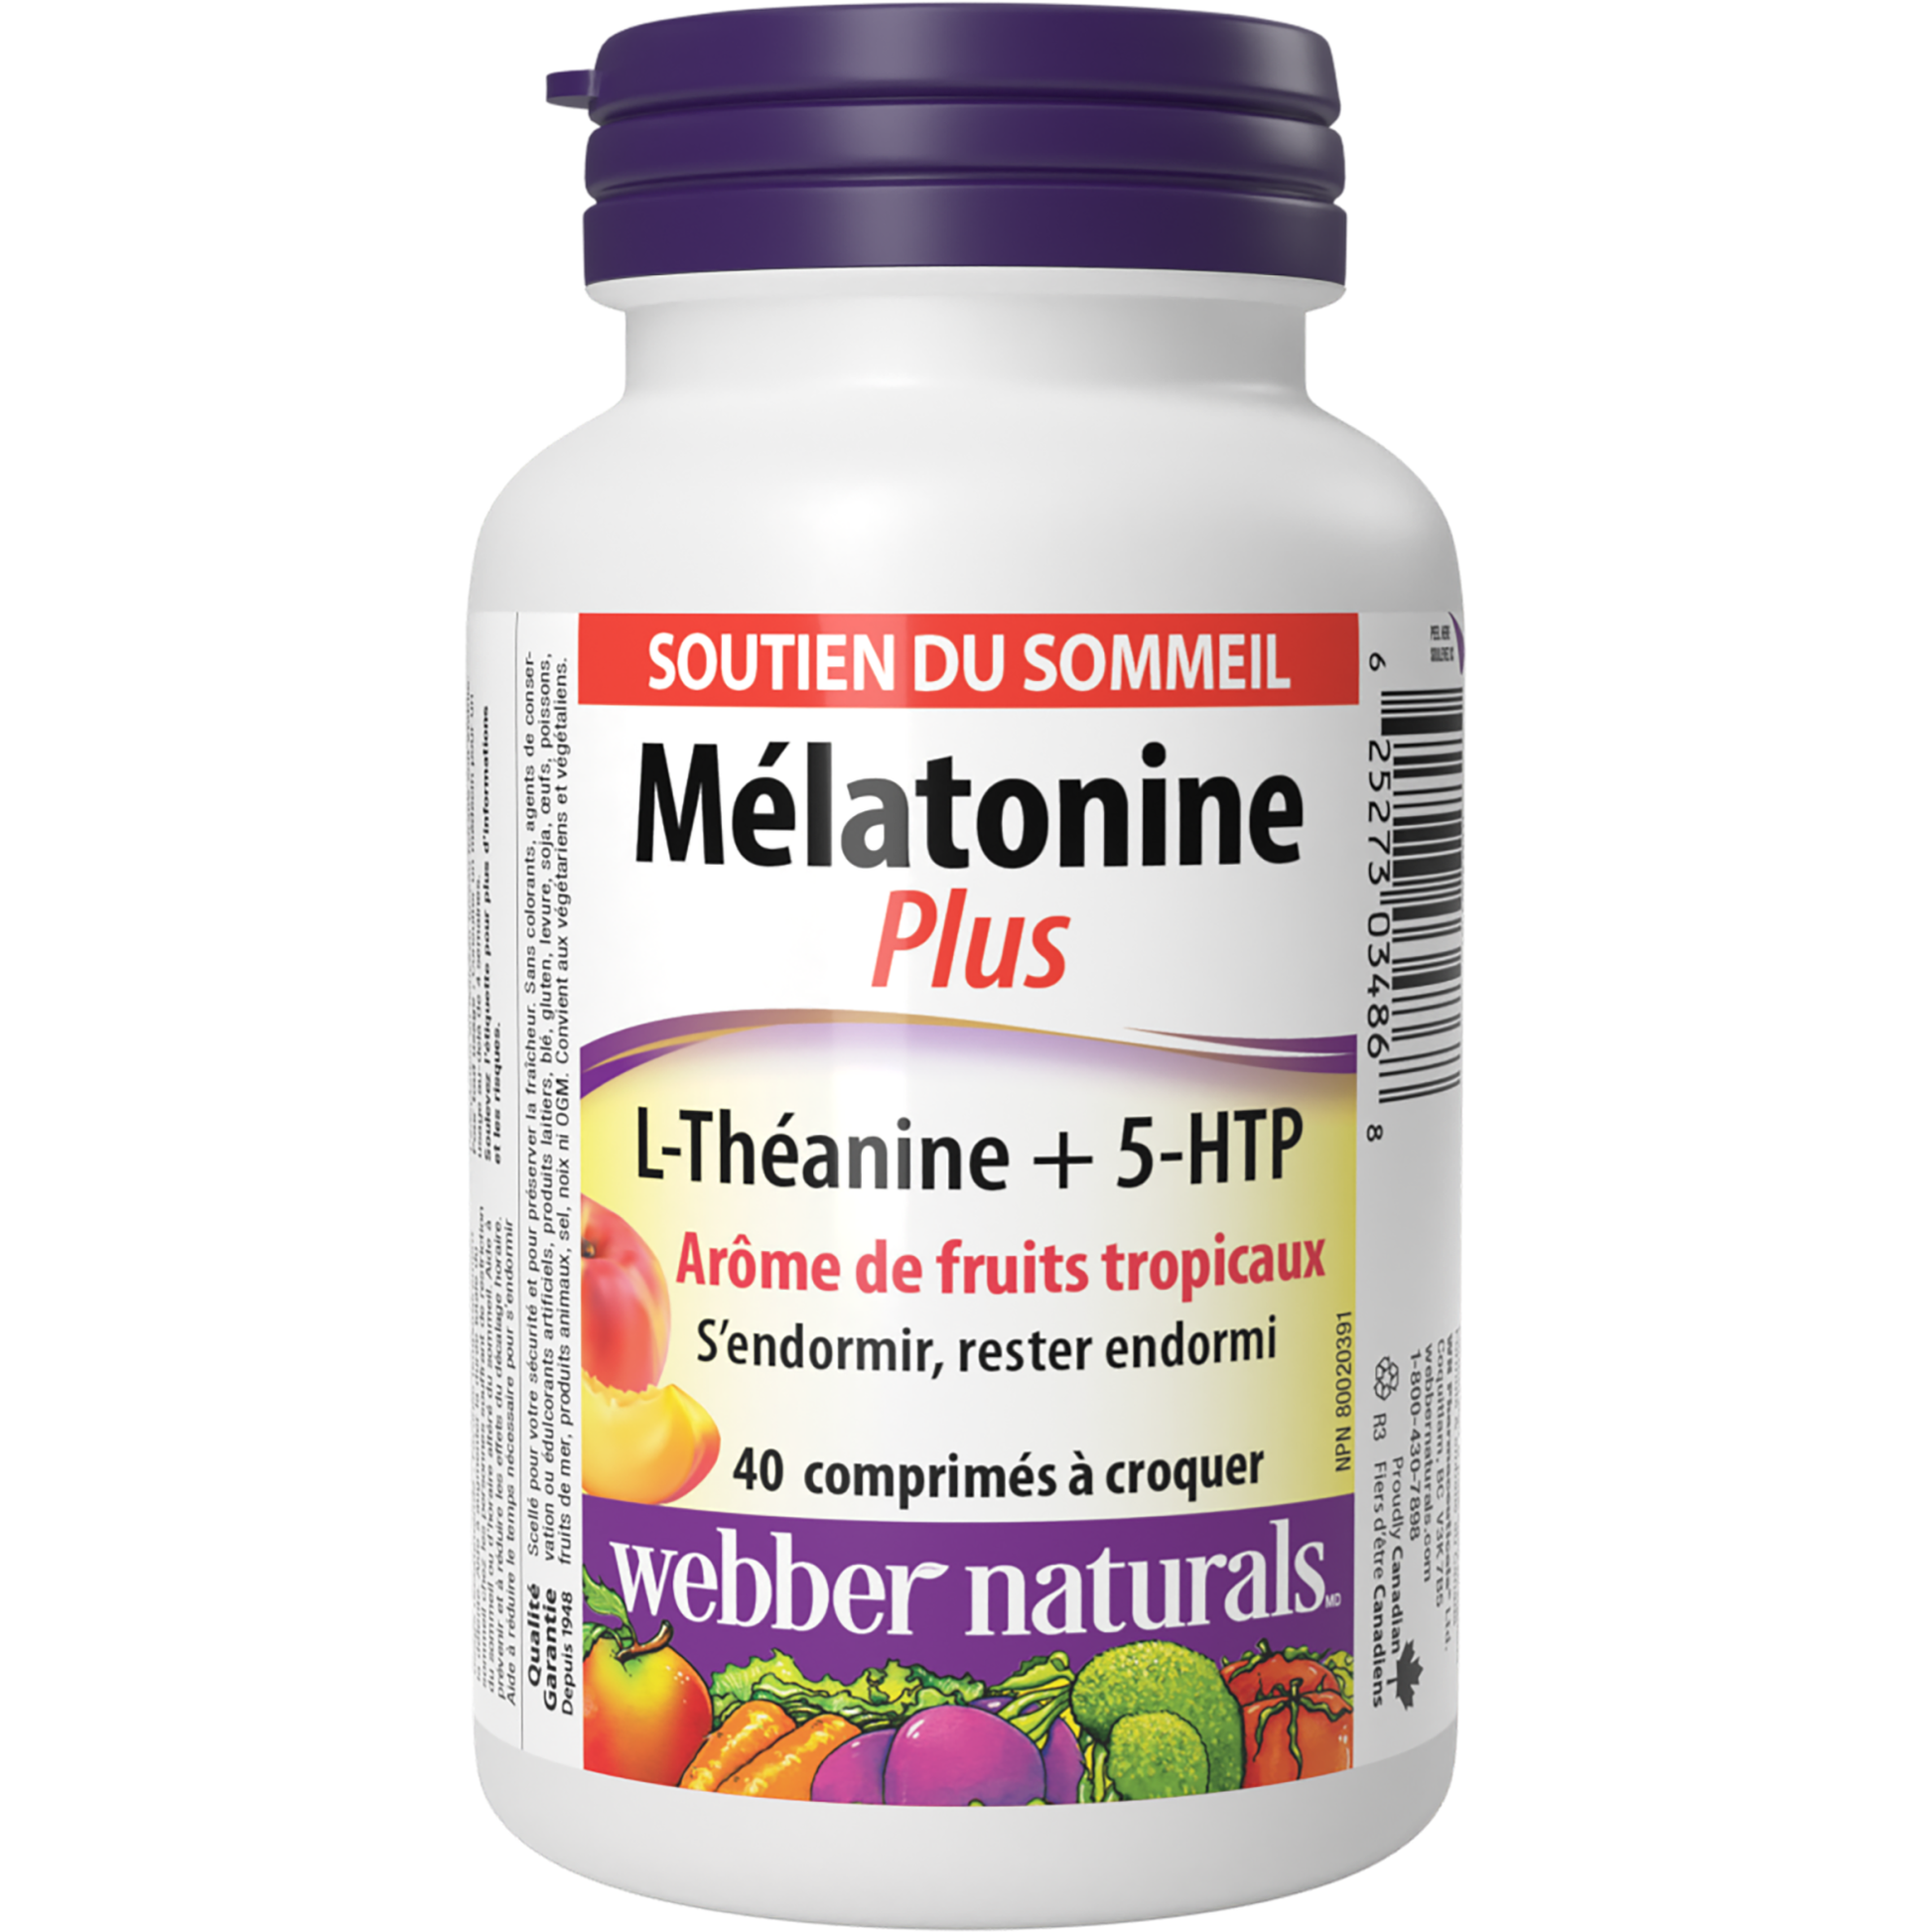 Mélatonine Plus L-Théanine + 5-HTP Arôme de fruits tropicaux for Webber Naturals|v|hi-res|WN3486